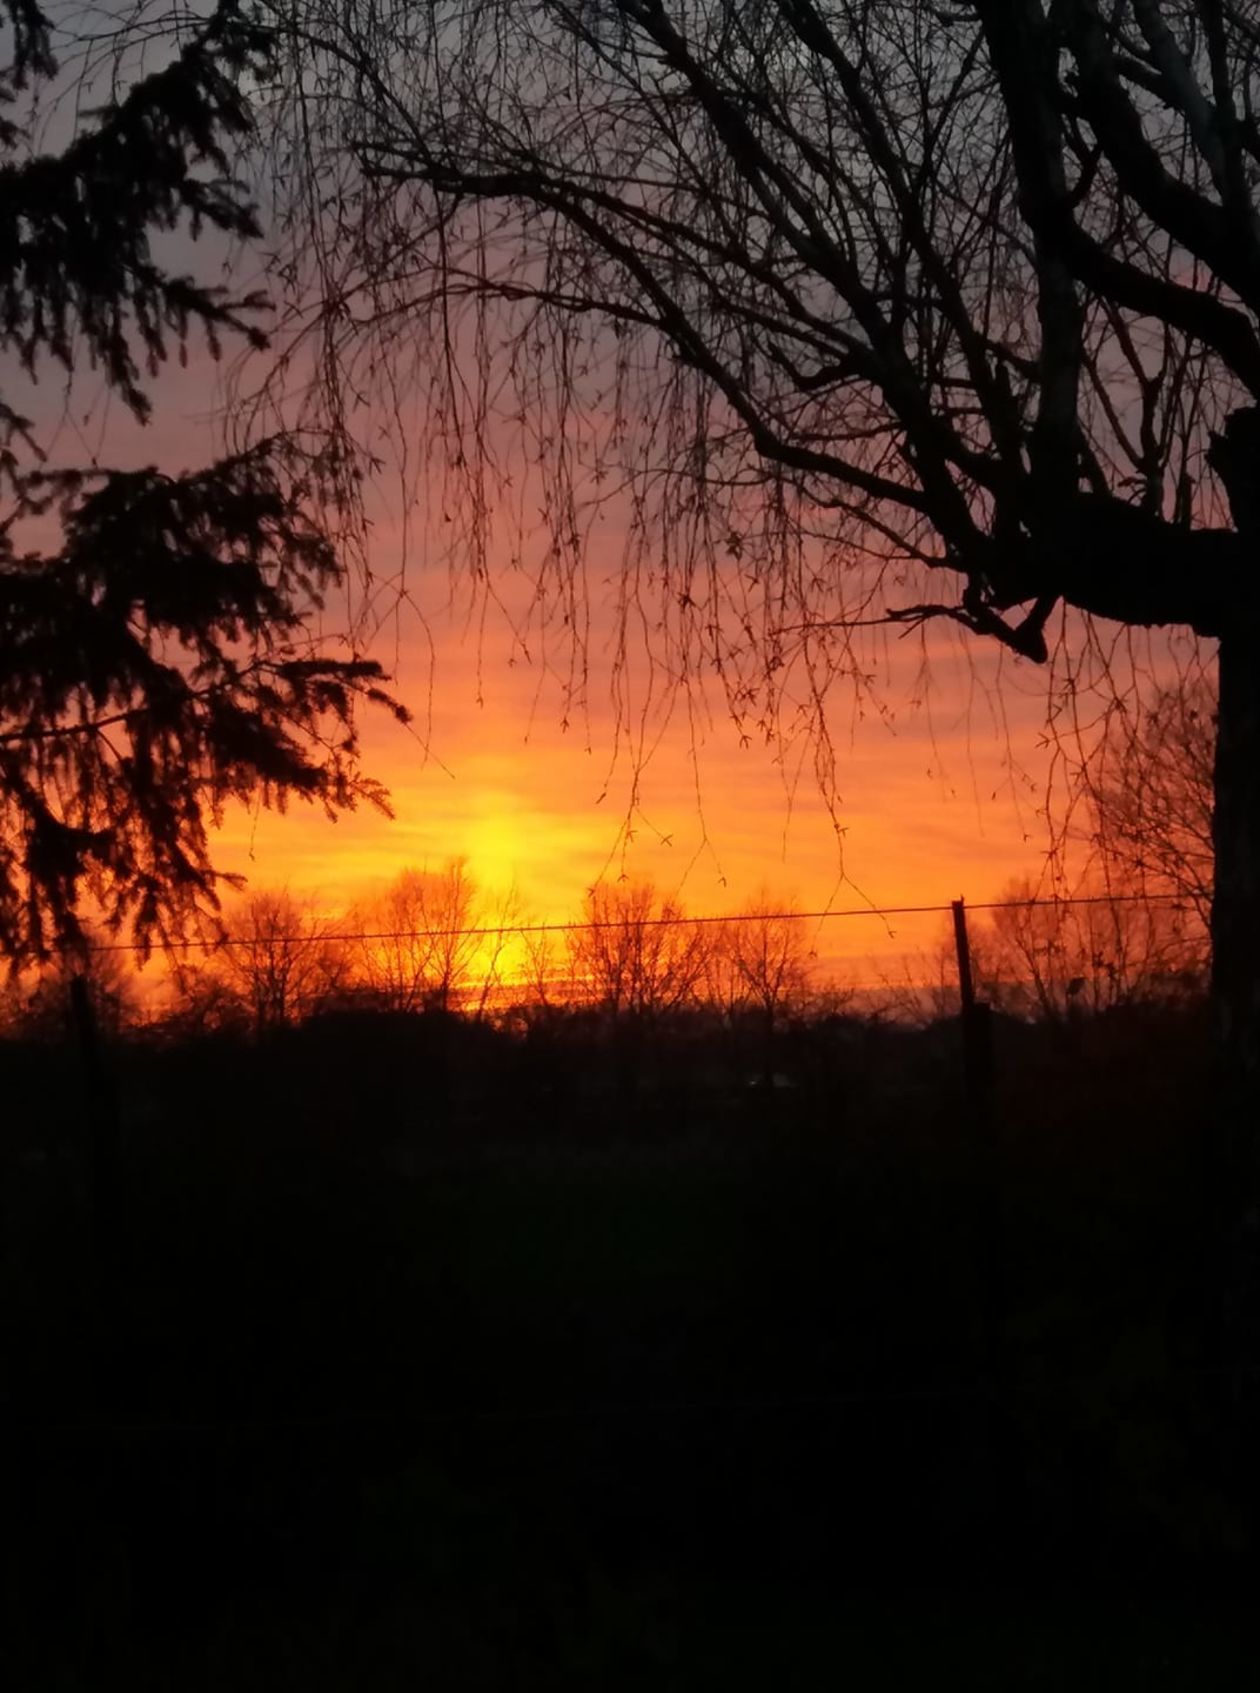  Filar słoneczny i zachód słońca - zdjęcia Czytelników (zdjęcie 1) - Autor: Justyna Langwińska